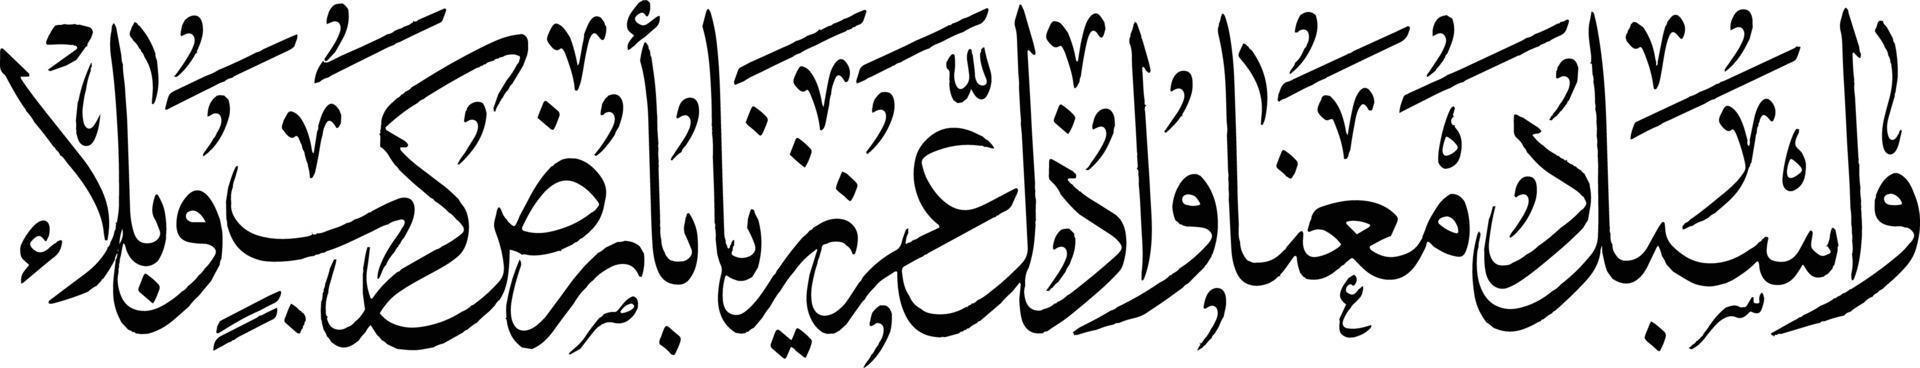 vetor livre de caligrafia árabe islâmica arbi